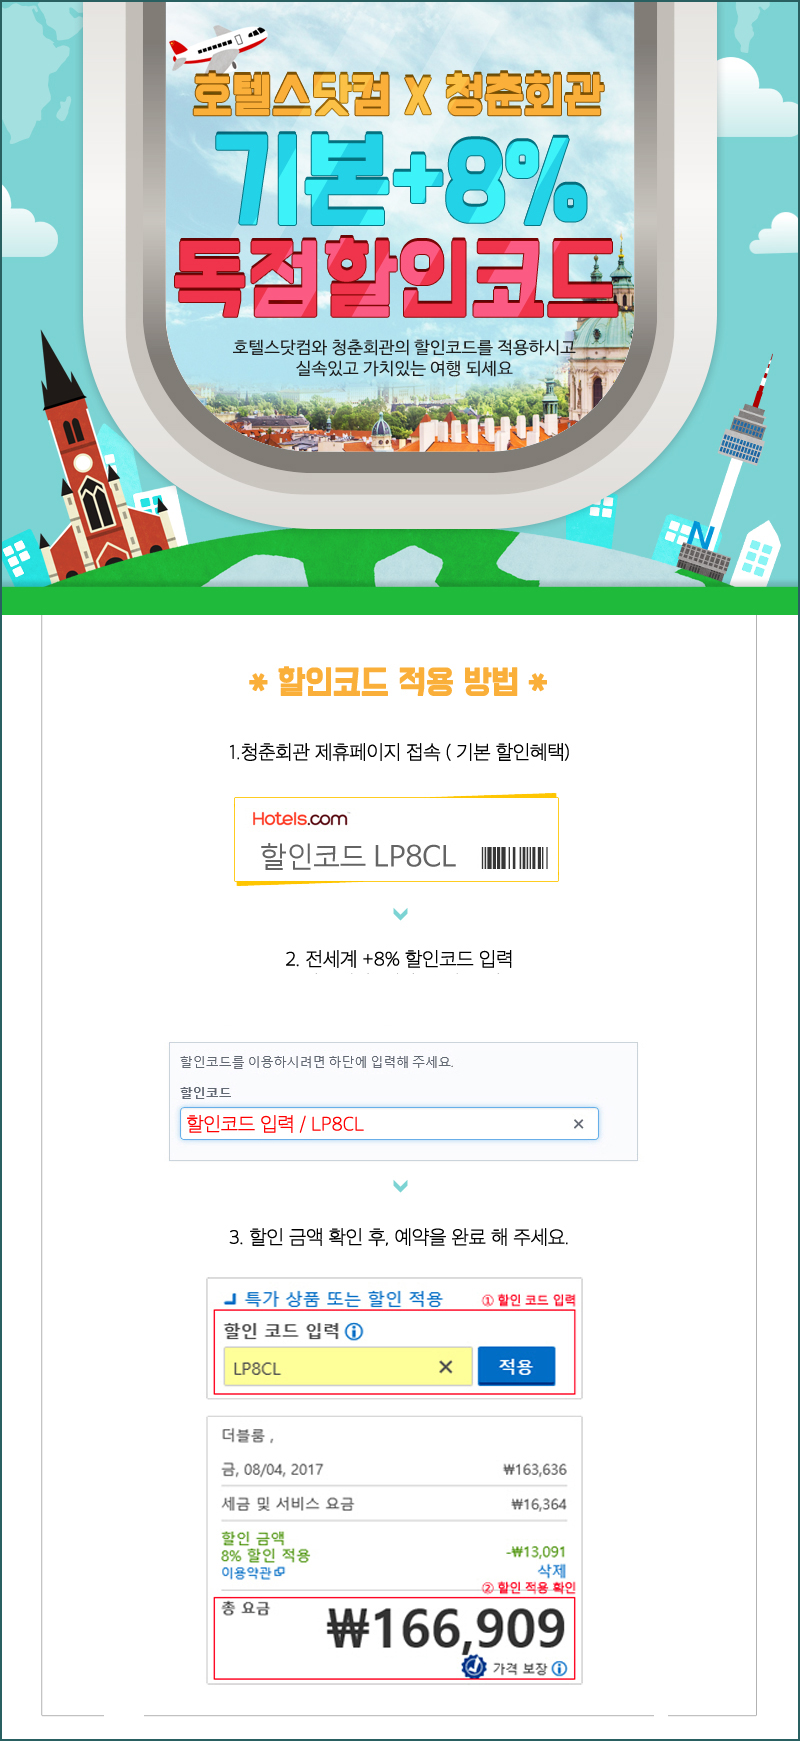 호텔스닷컴 5월 할인코드 8% 청춘회관 체크!!